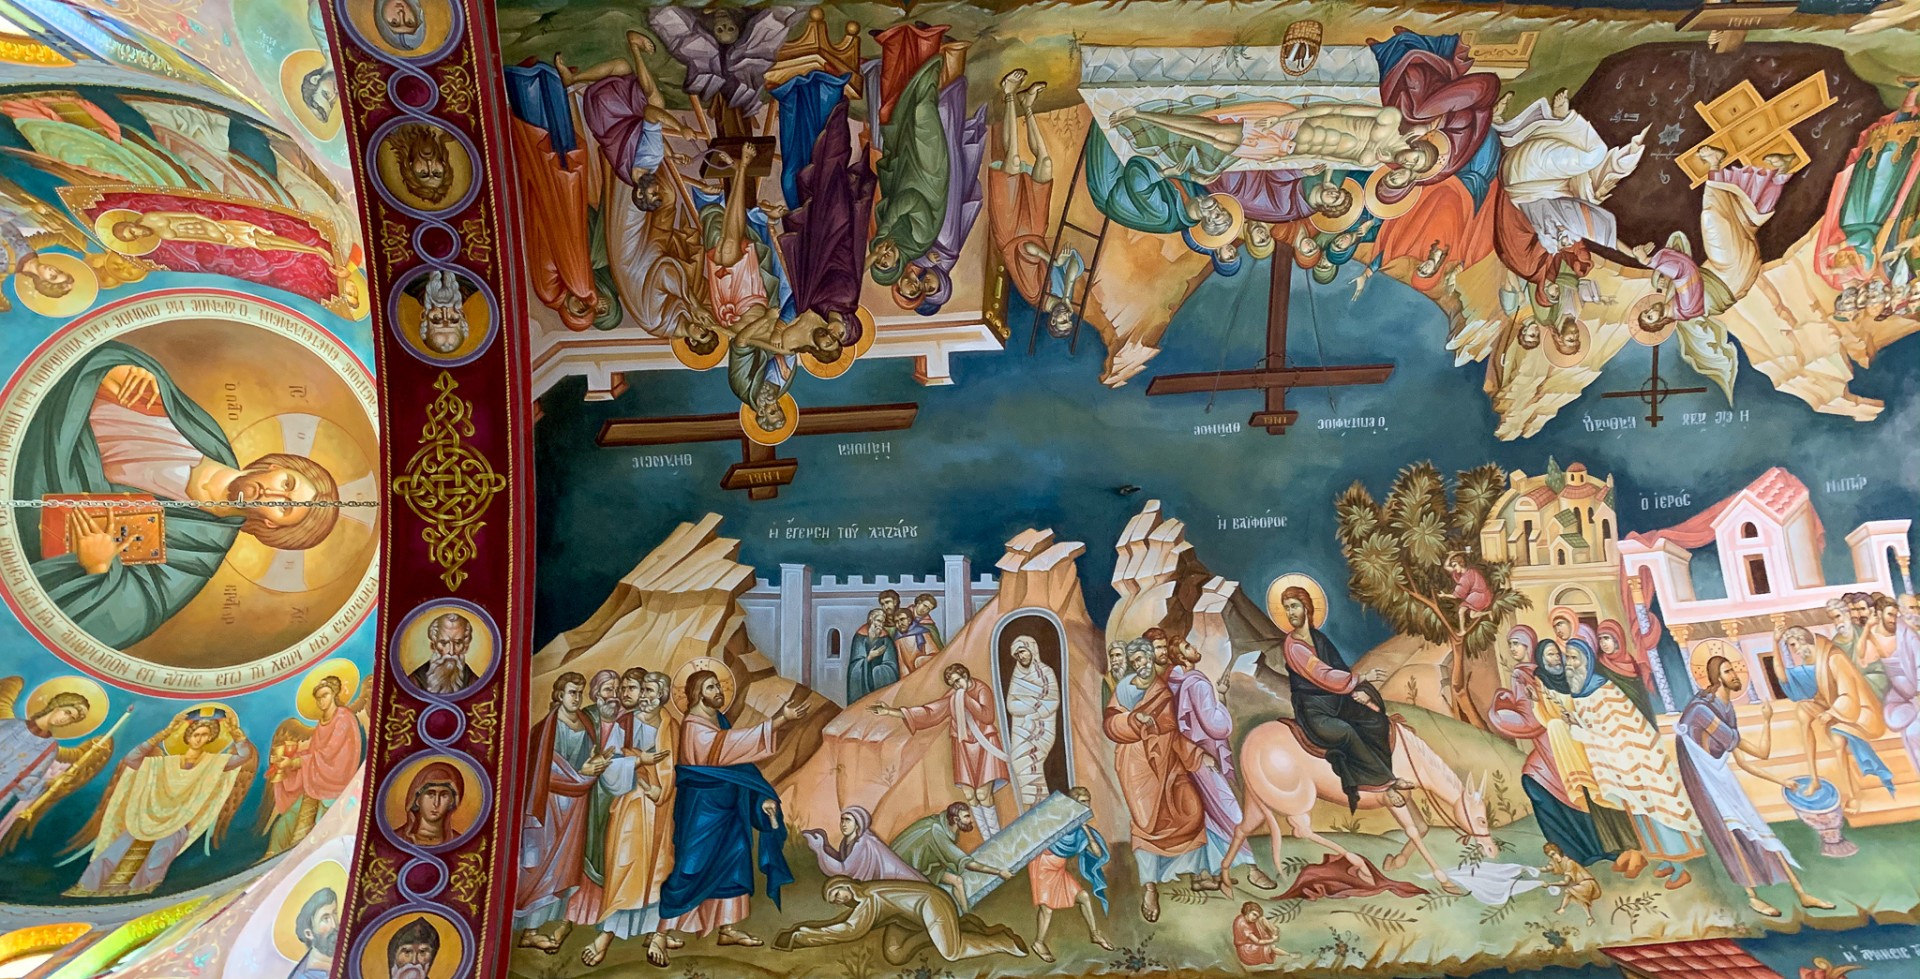 Det tog sju år att färdigställa freskerna i klosterkyrkan "Frälsarens omvandling"